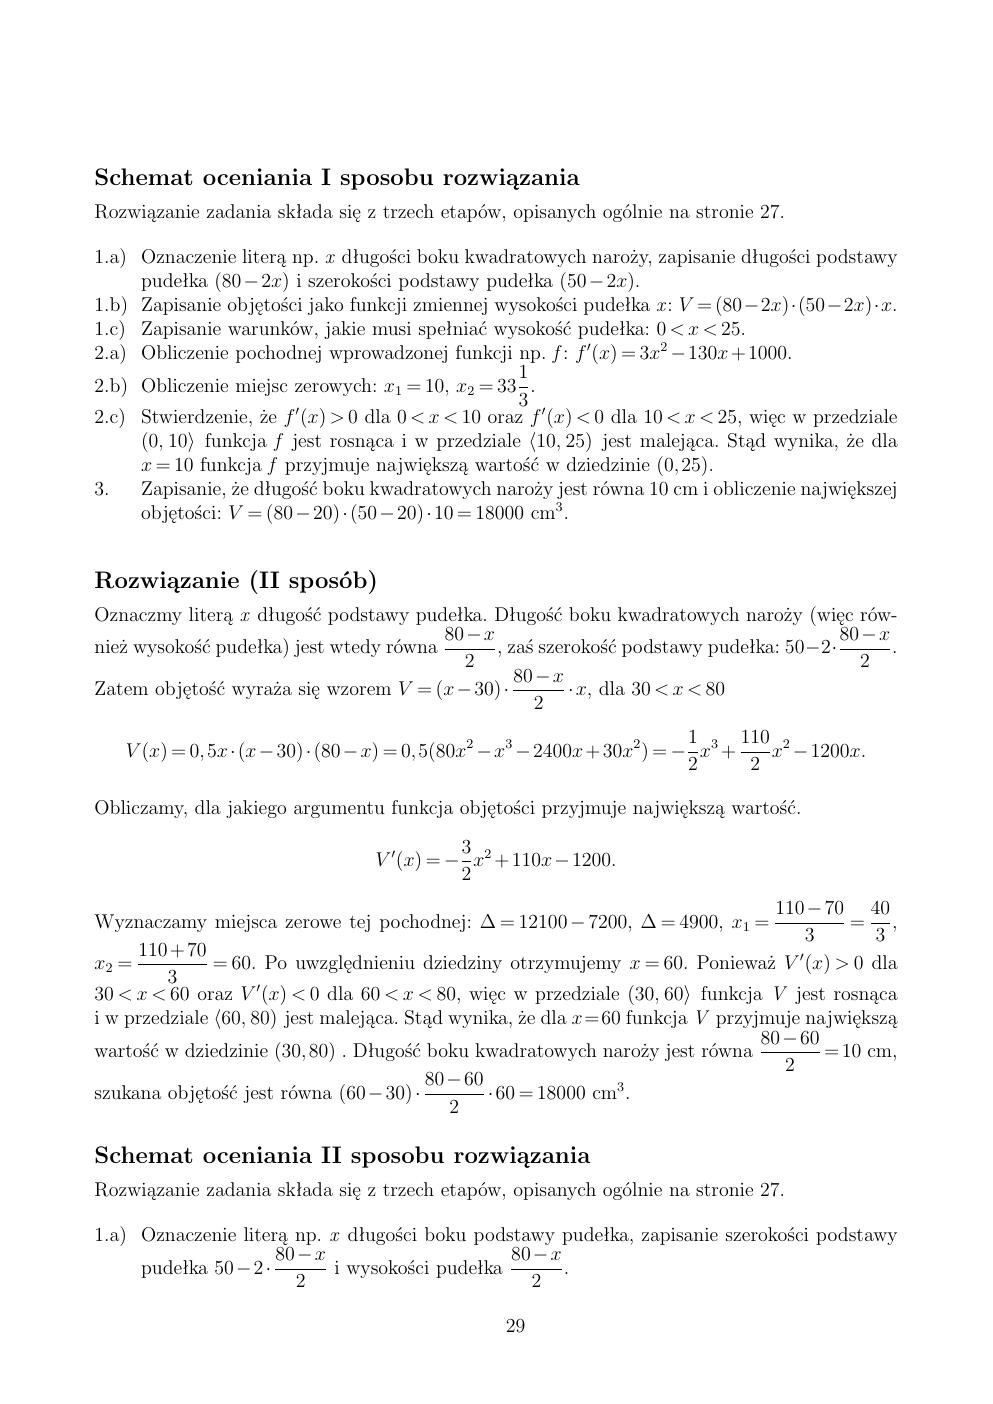 zasady oceniania - odpowiedzi - matematyka rozszerzony - matura 2015 przykładowa-29